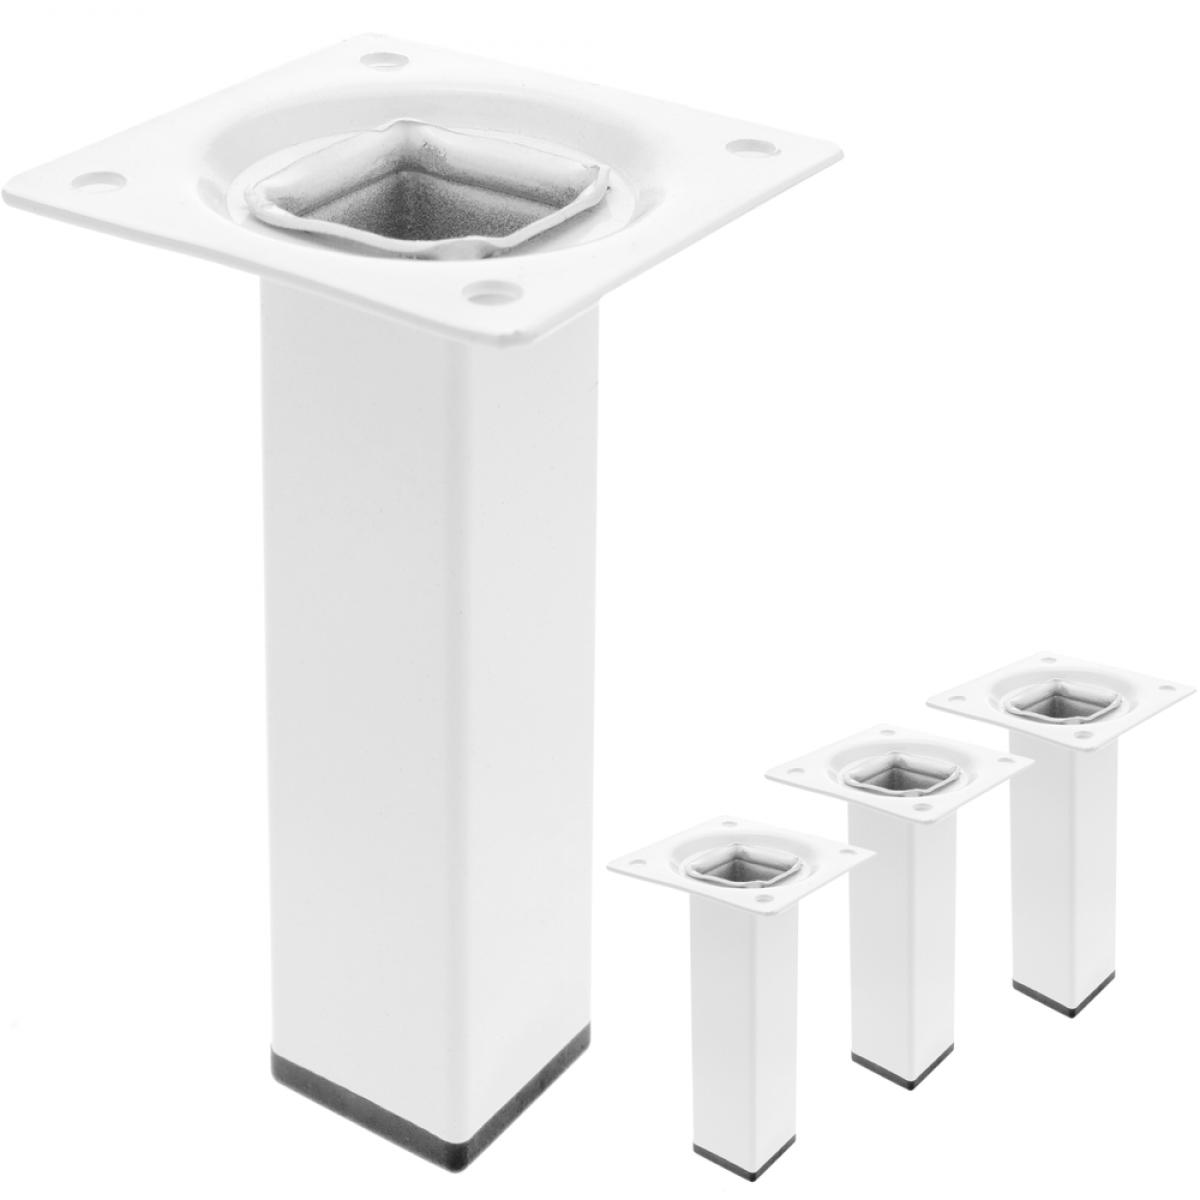 Primematik - Pieds de table carré pour meubles et bureau en acier blanc 10cm 4-pack - Pieds & roulettes pour meuble